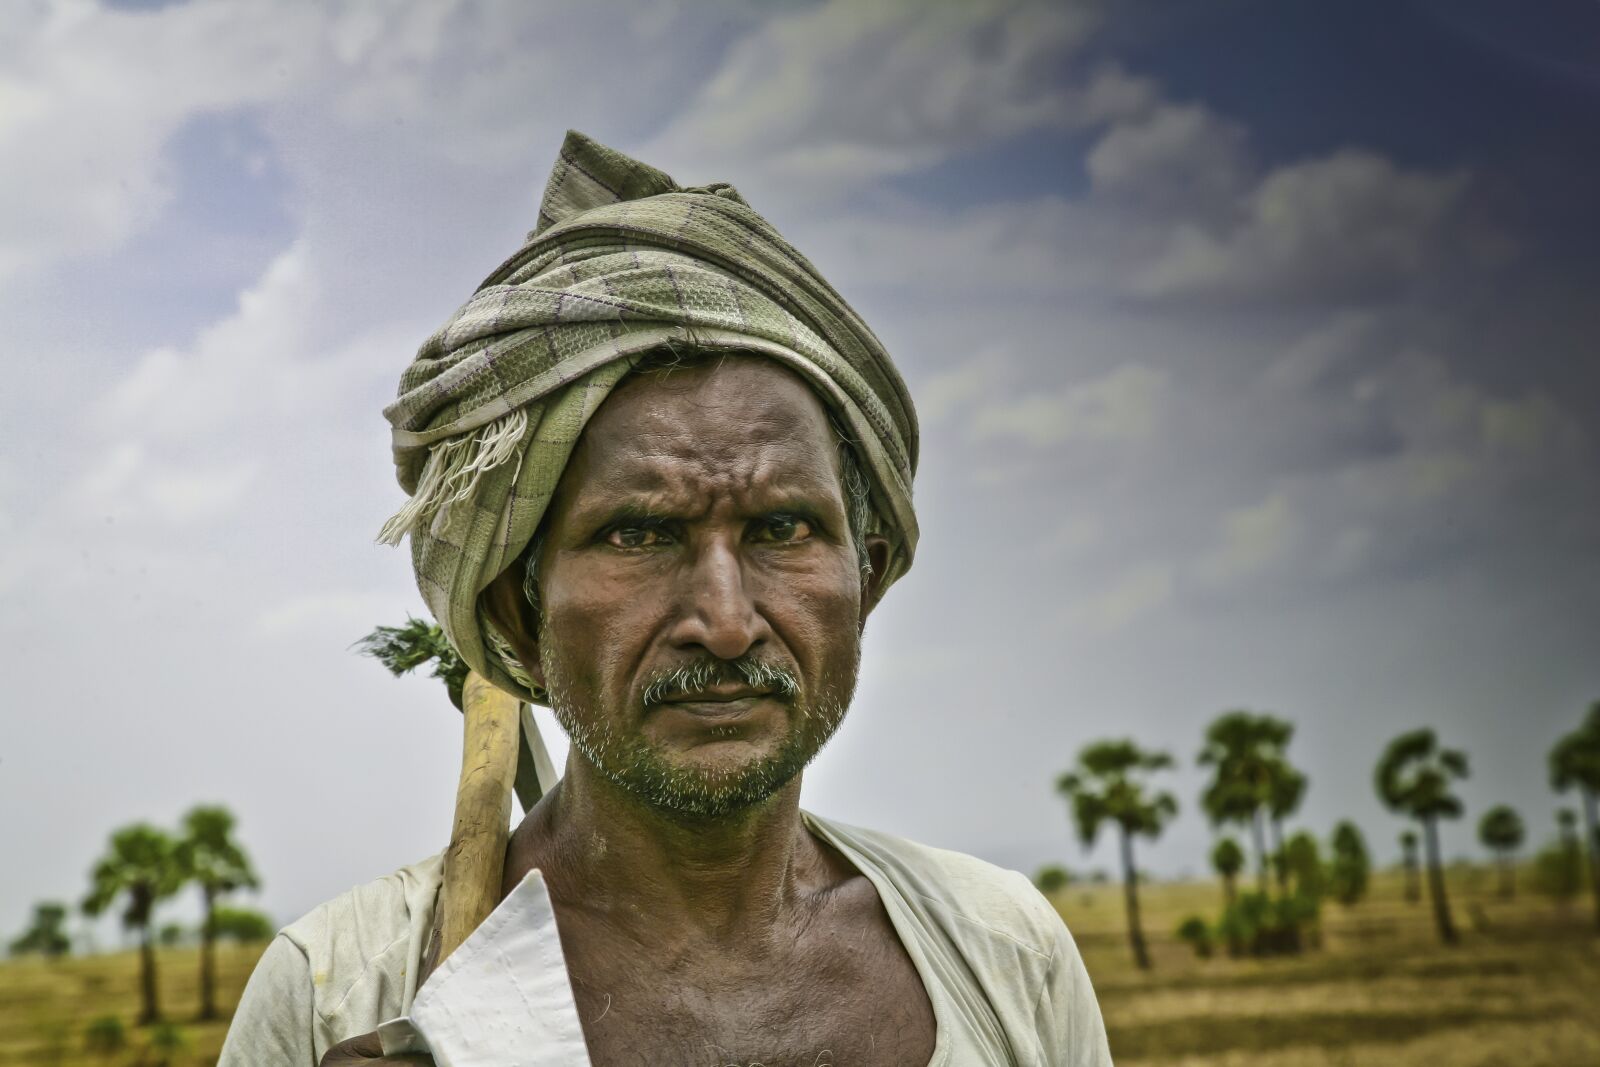 Canon EOS 5D sample photo. Farmer, india, mohan photography